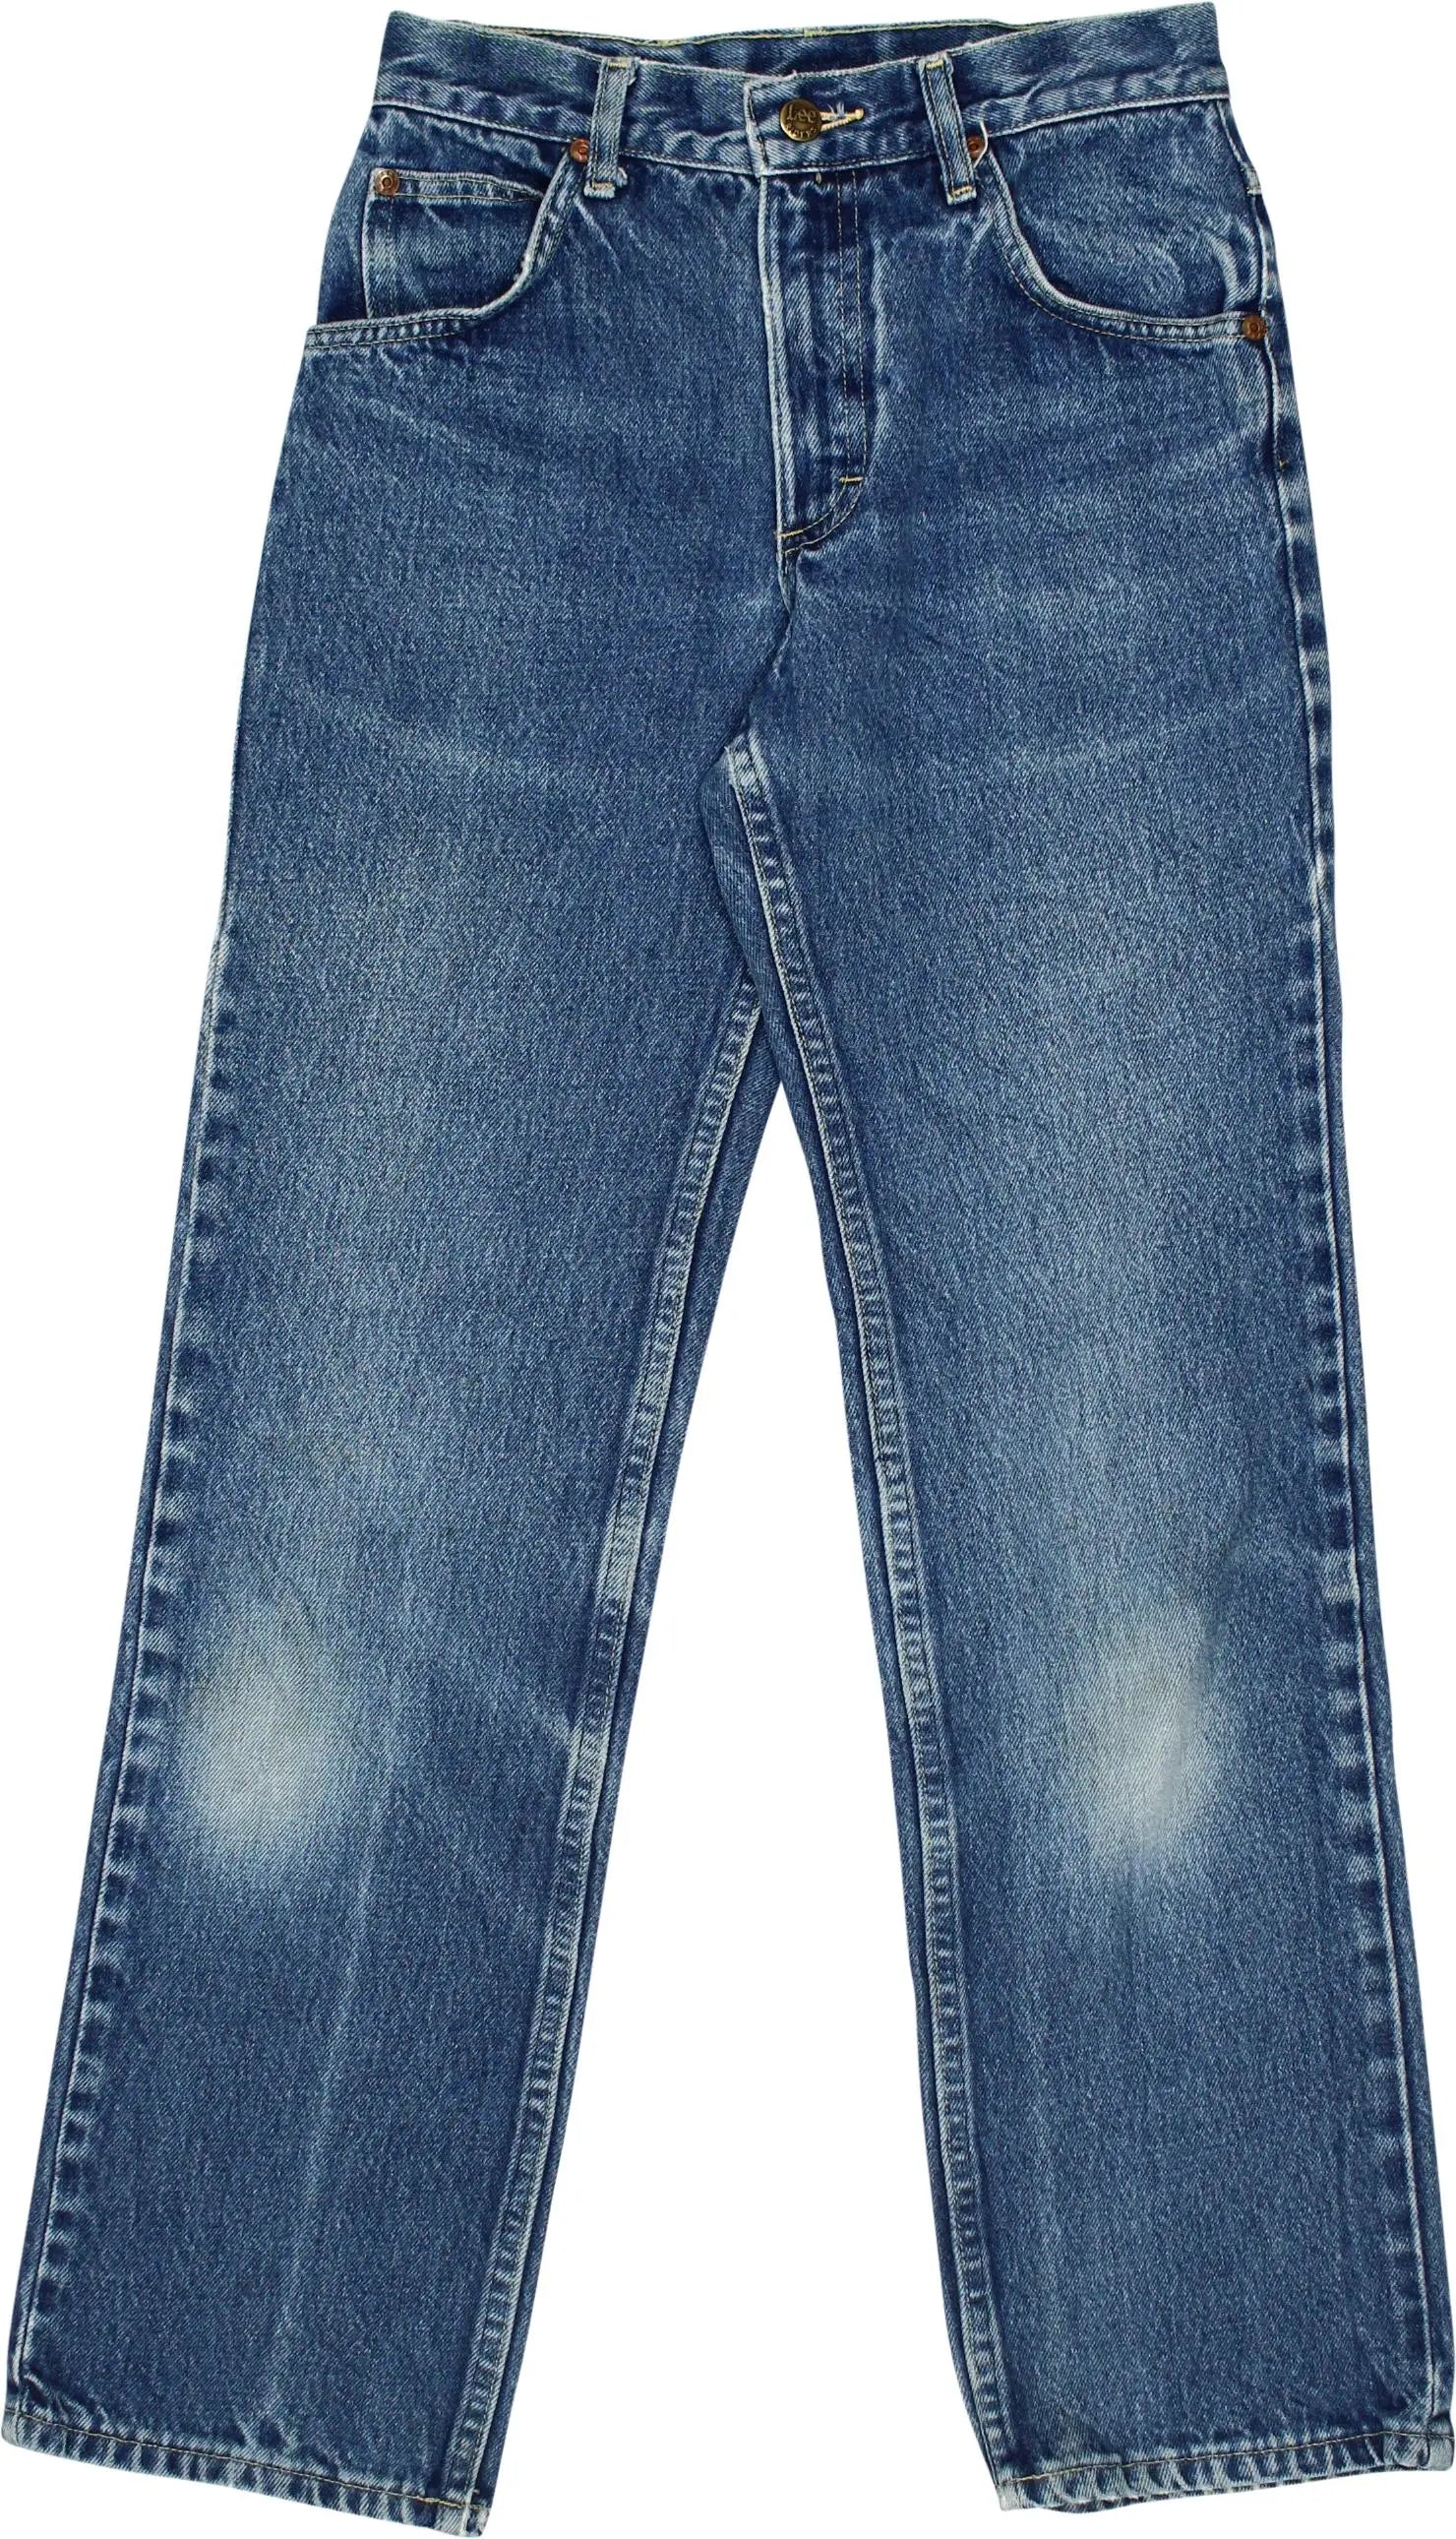 Vintage Jeans Straight